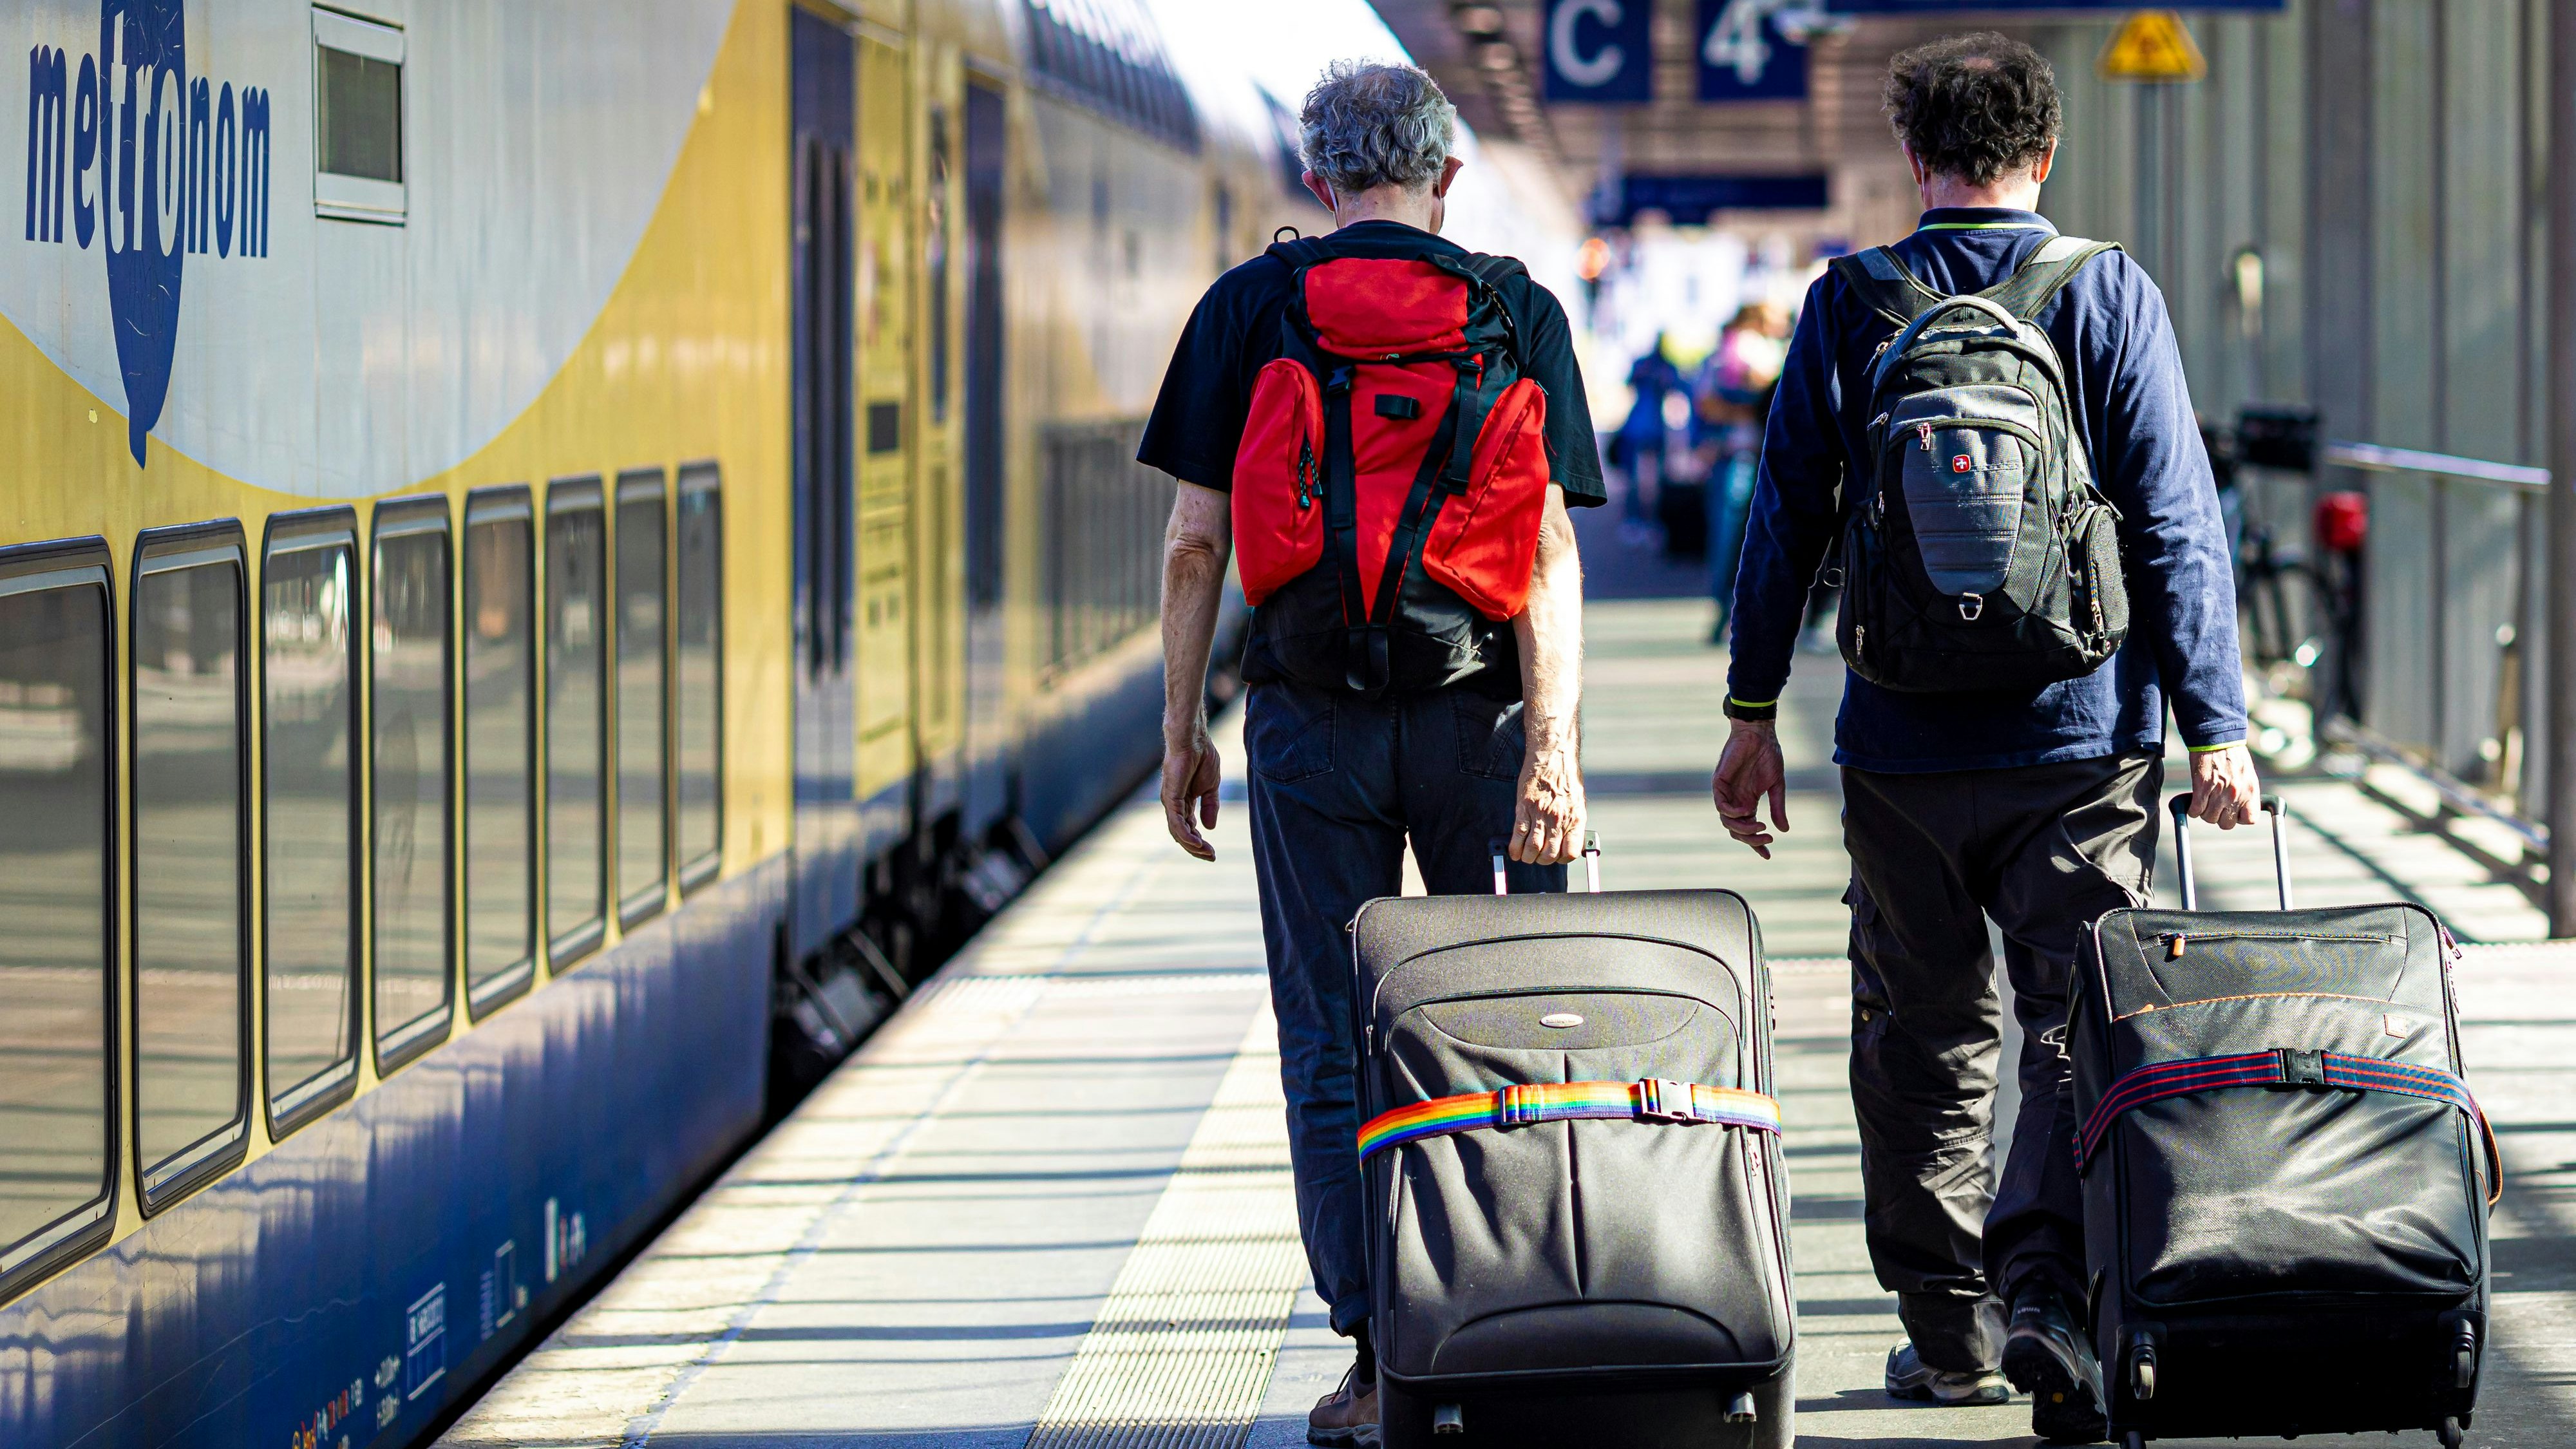 Reisende gehen einen Bahnsteig im Hauptbahnhof Hannover entlang. Das beliebte 9-Euro-Ticket im Öffentlicher Personennahverkehr war am 31. August ausgelaufen. Symbolfoto: dpa